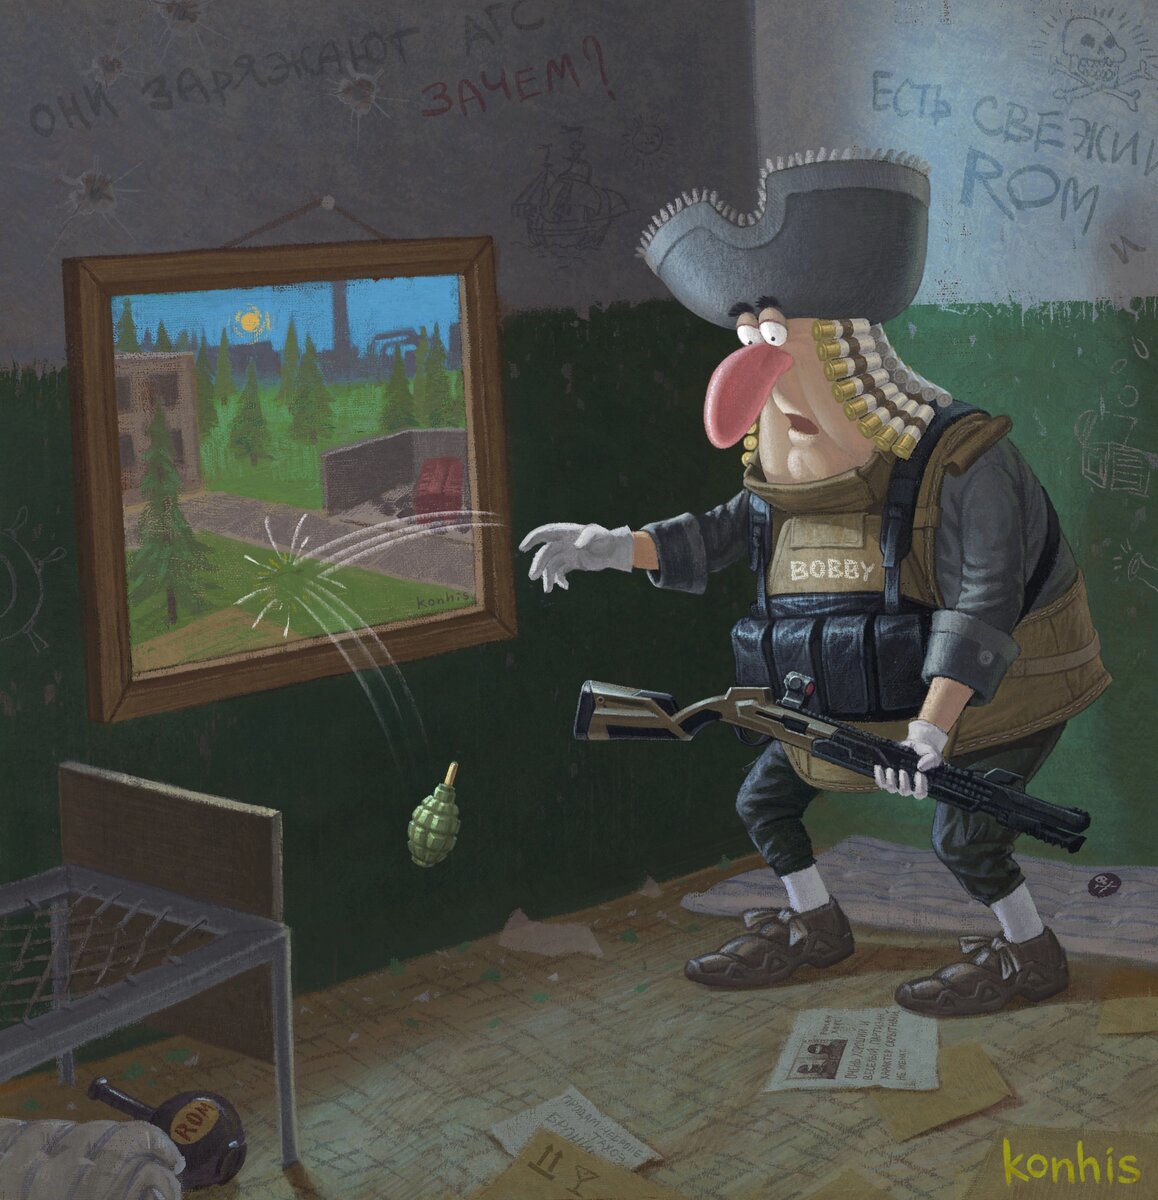 Московский в стиле советского мультфильма Остров сокровищ, художник рисует персонажей известных видеоигр.